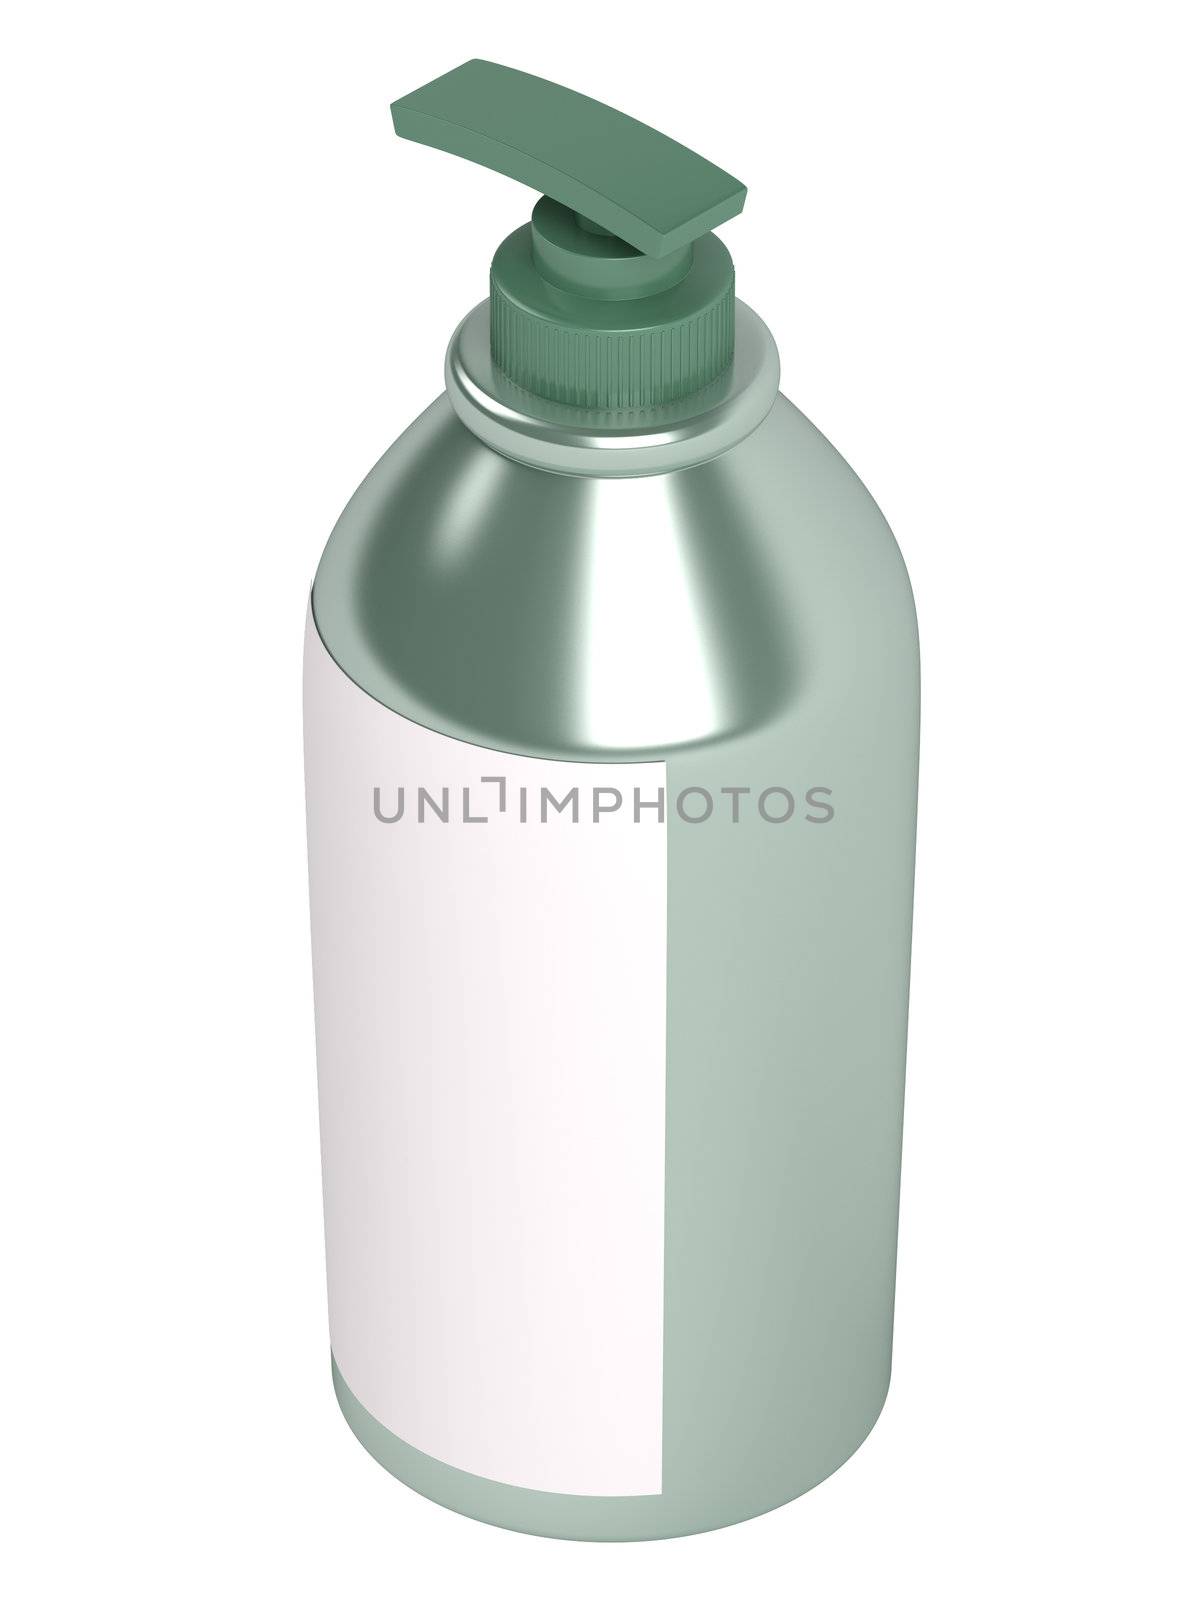 Green shampoo bottle isolated on white background